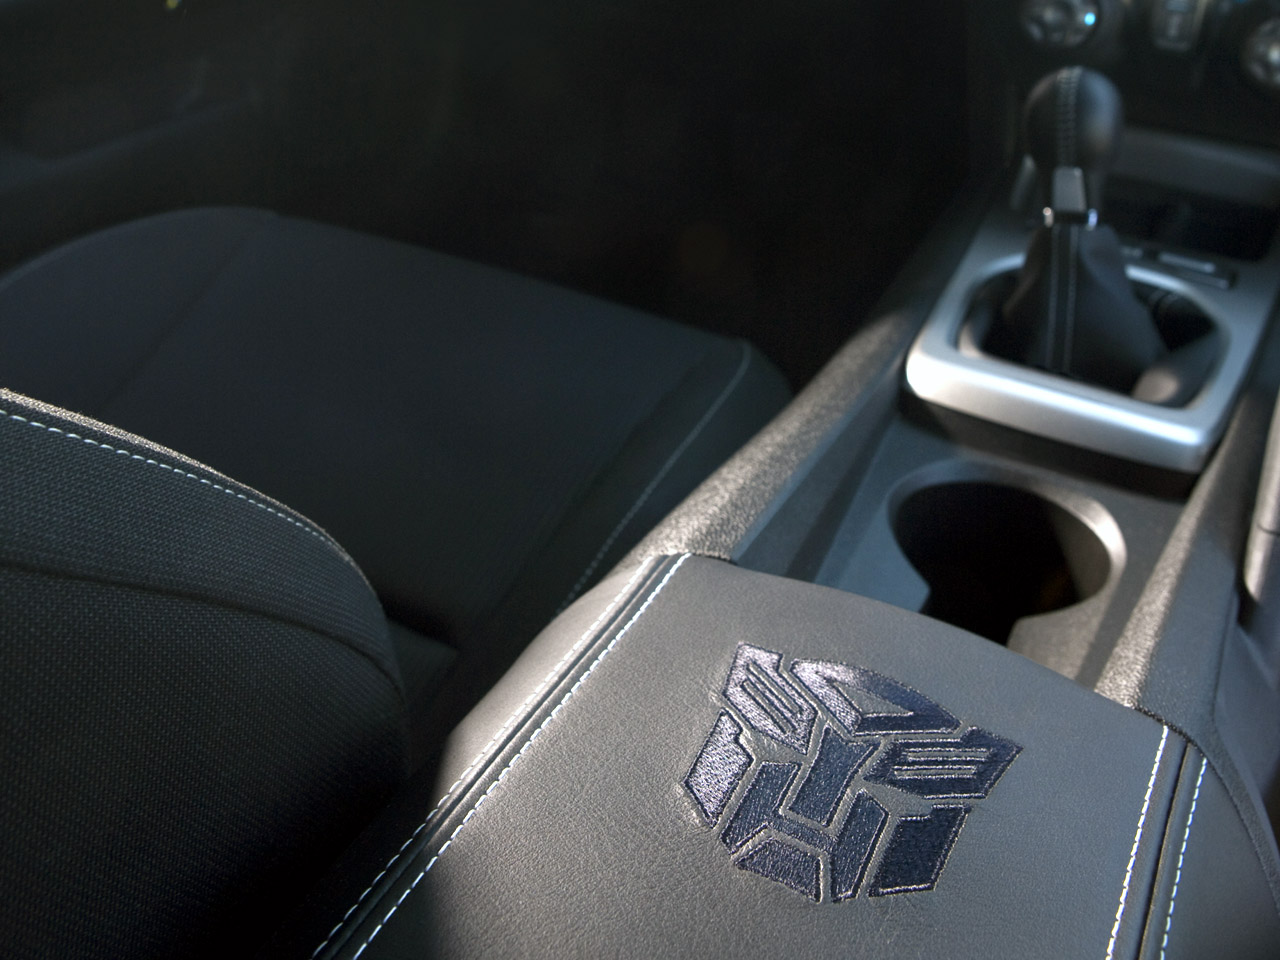 2010 Chevrolet Camaro Transformers Special Edition